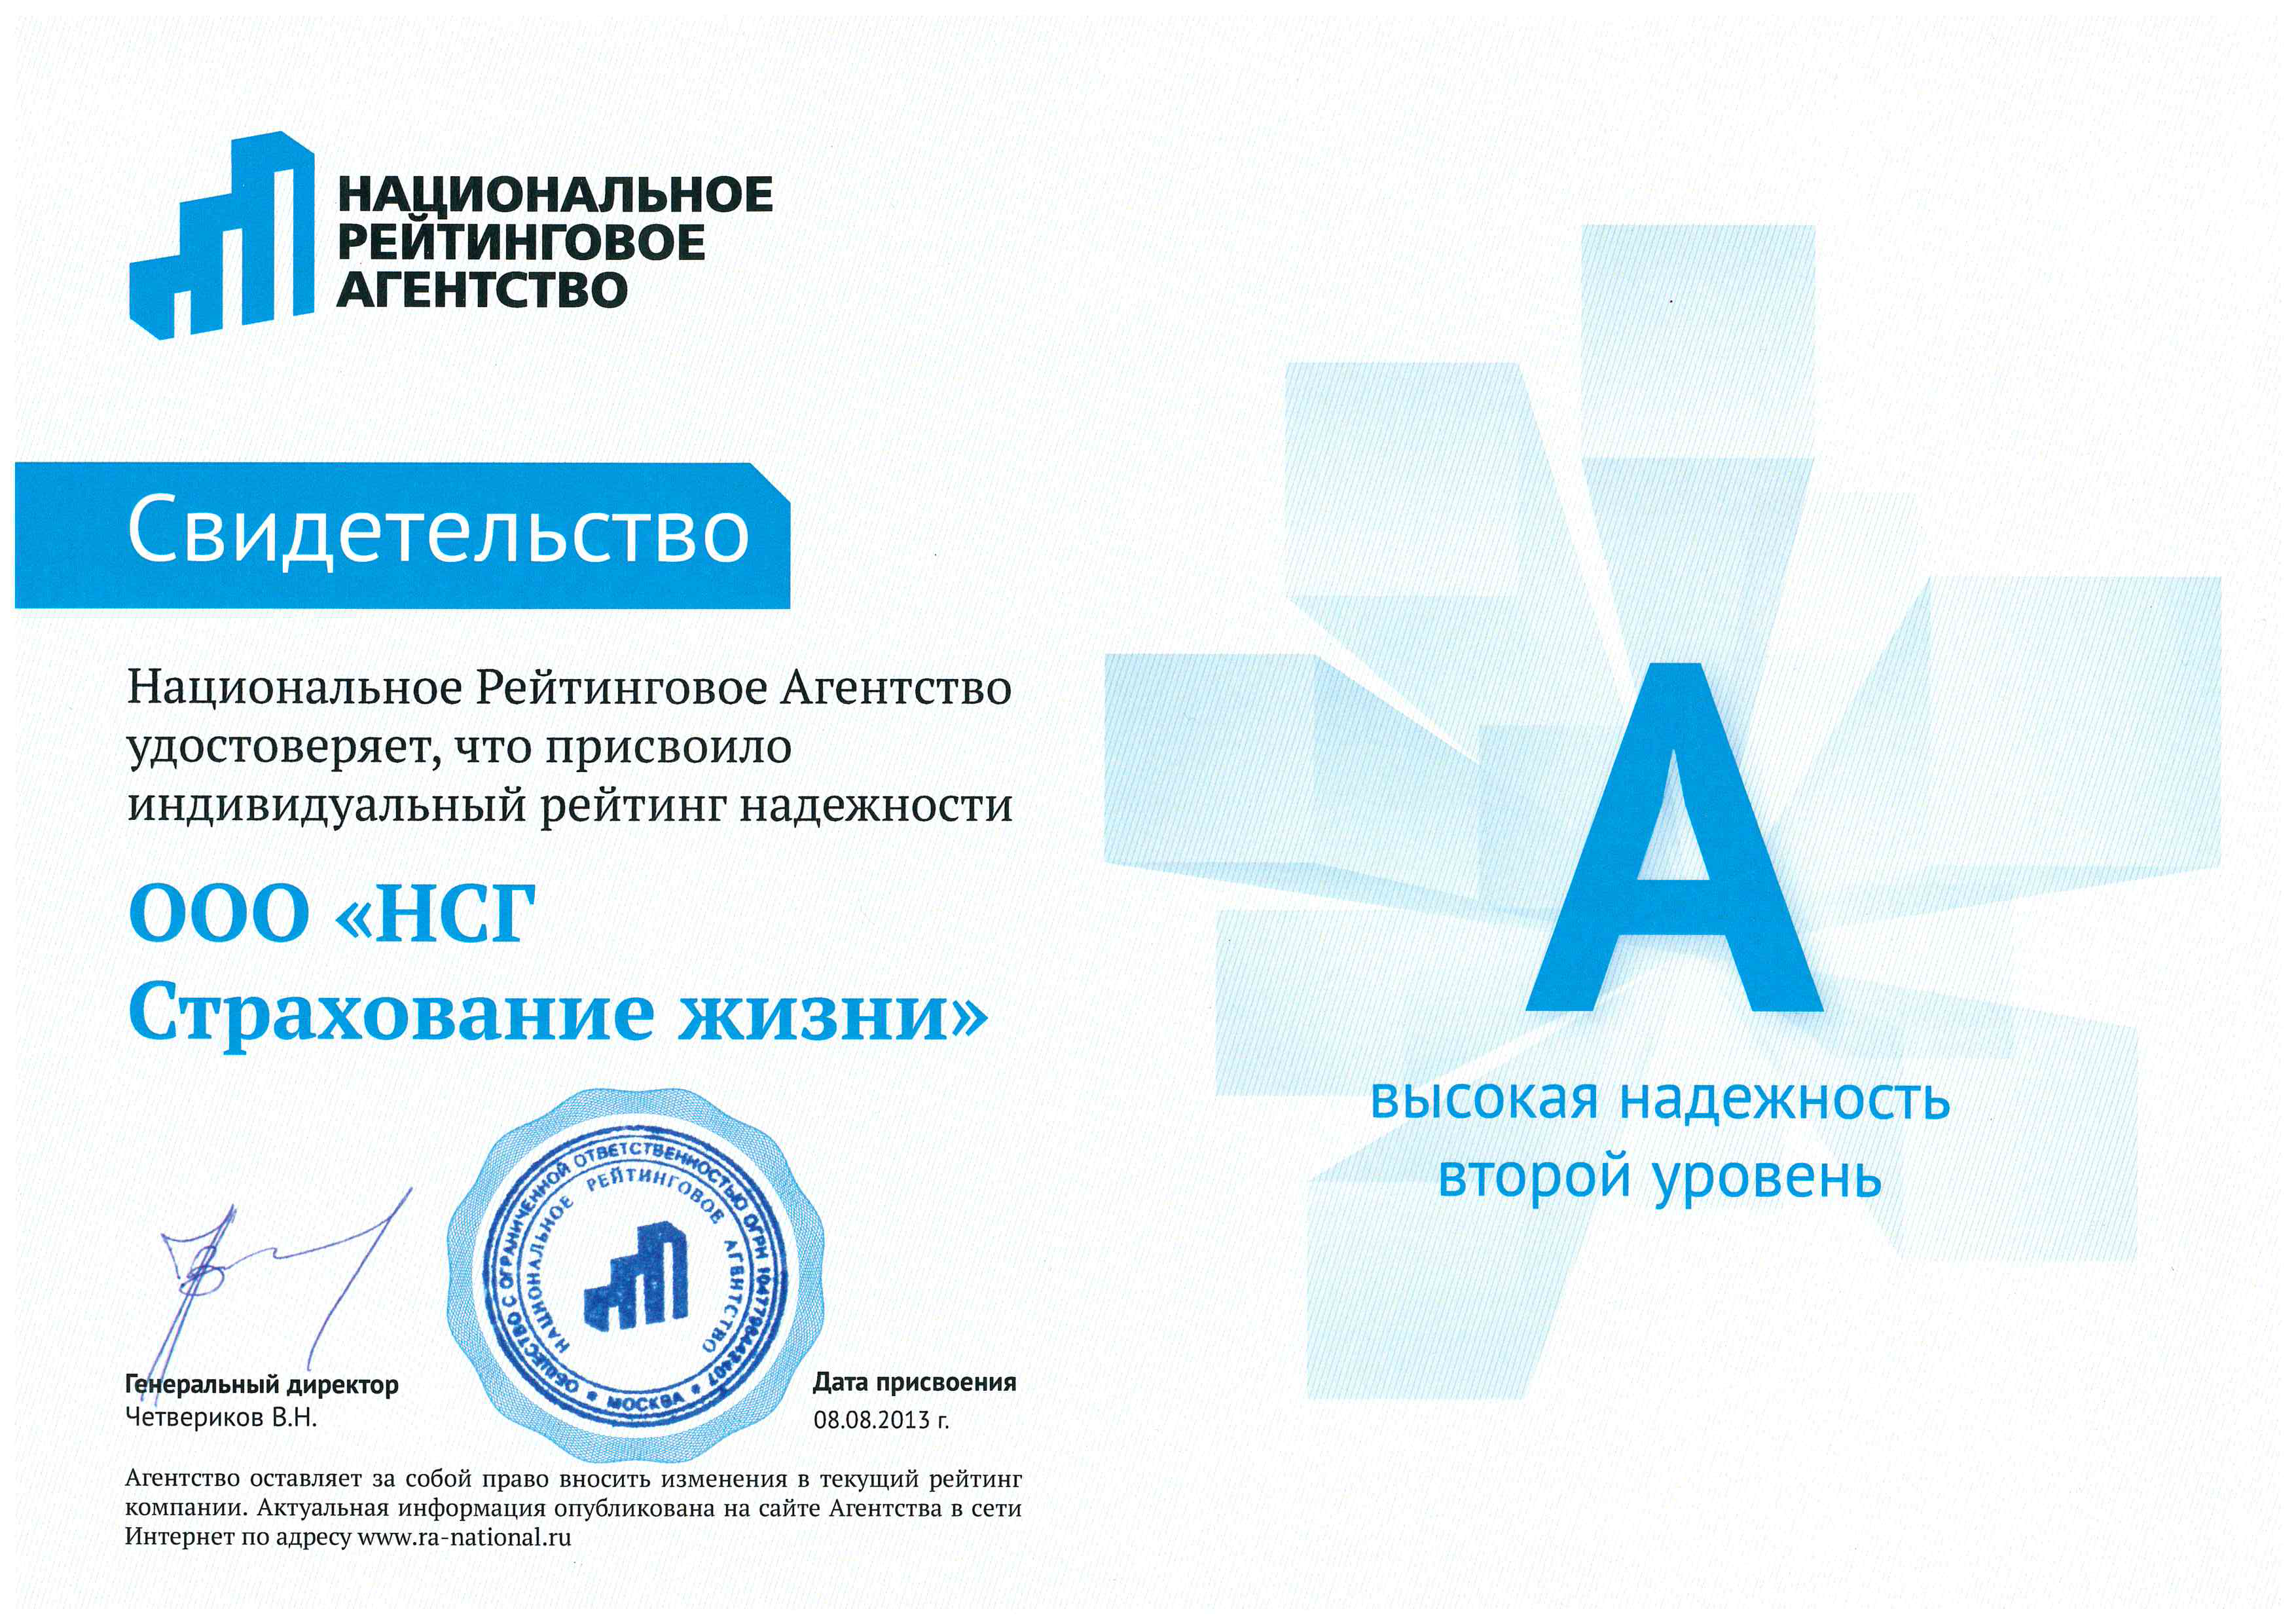 Акра рейтинговое агентство сайт. Нра рейтинговое агентство. Дело жизни страховая компания. Логотип национальной Российской ассоциации.